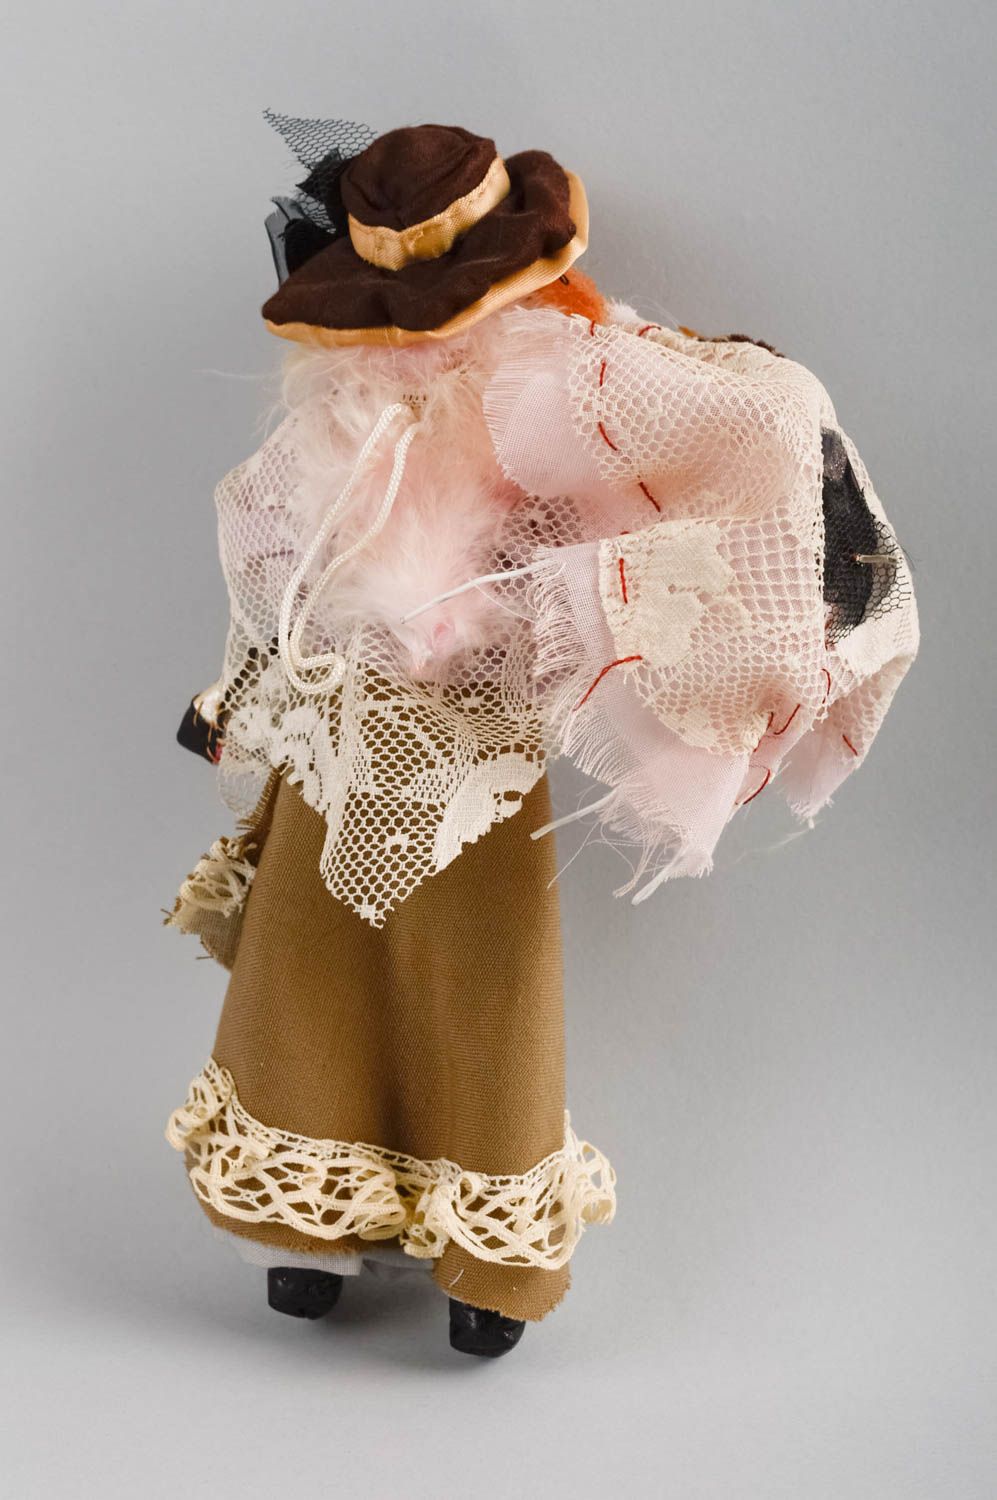 Игрушка кукла из ткани небольшая девушка нарядная для декора ручная работа фото 2